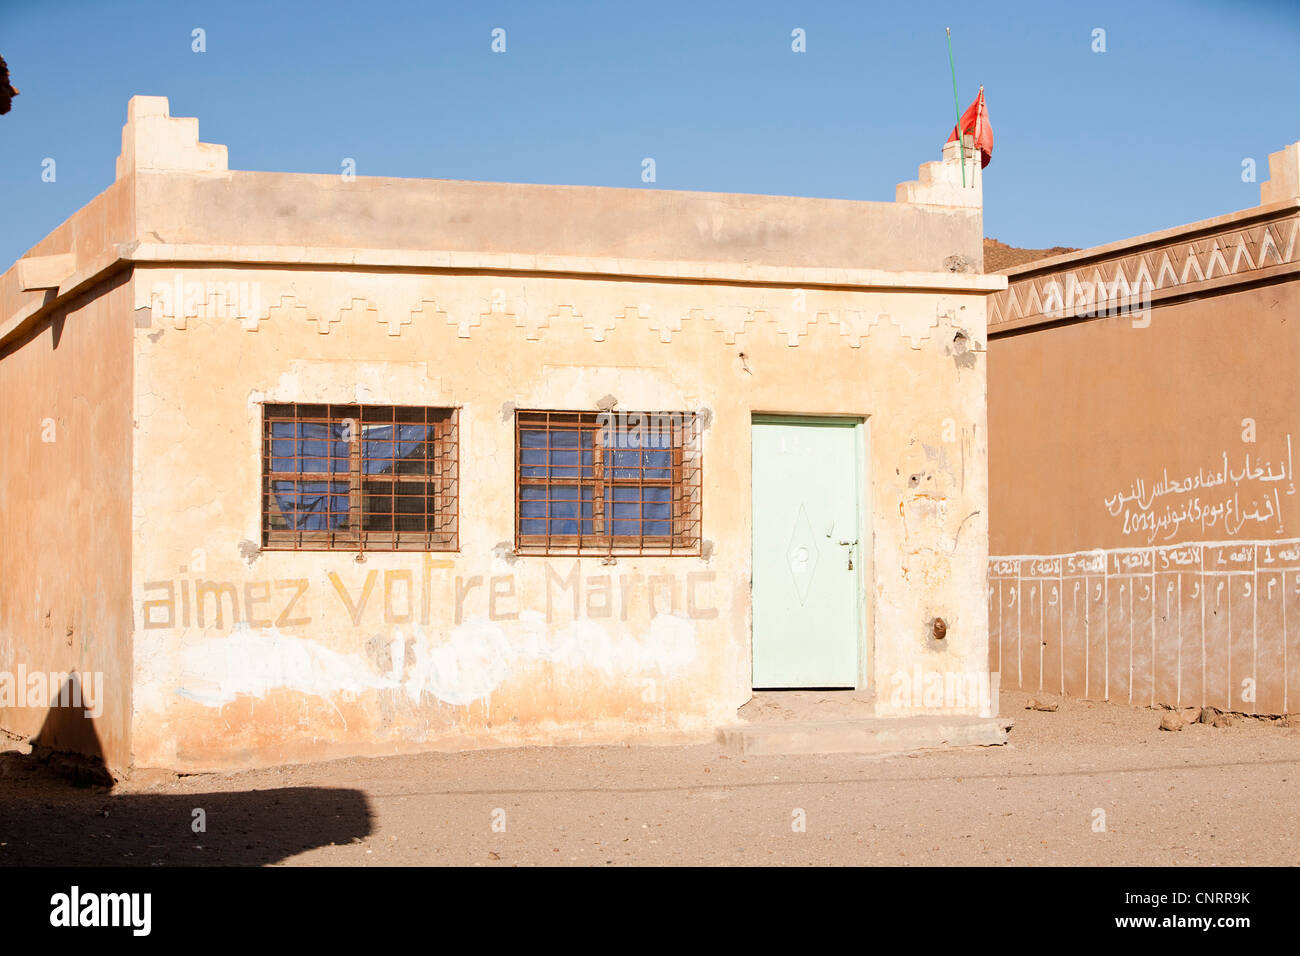 Une maison berbère dans le village de Tinzarine près de Djebel Sirwa dans l'Anti Atlas montagnes du Maroc, l'Afrique du Nord. Banque D'Images